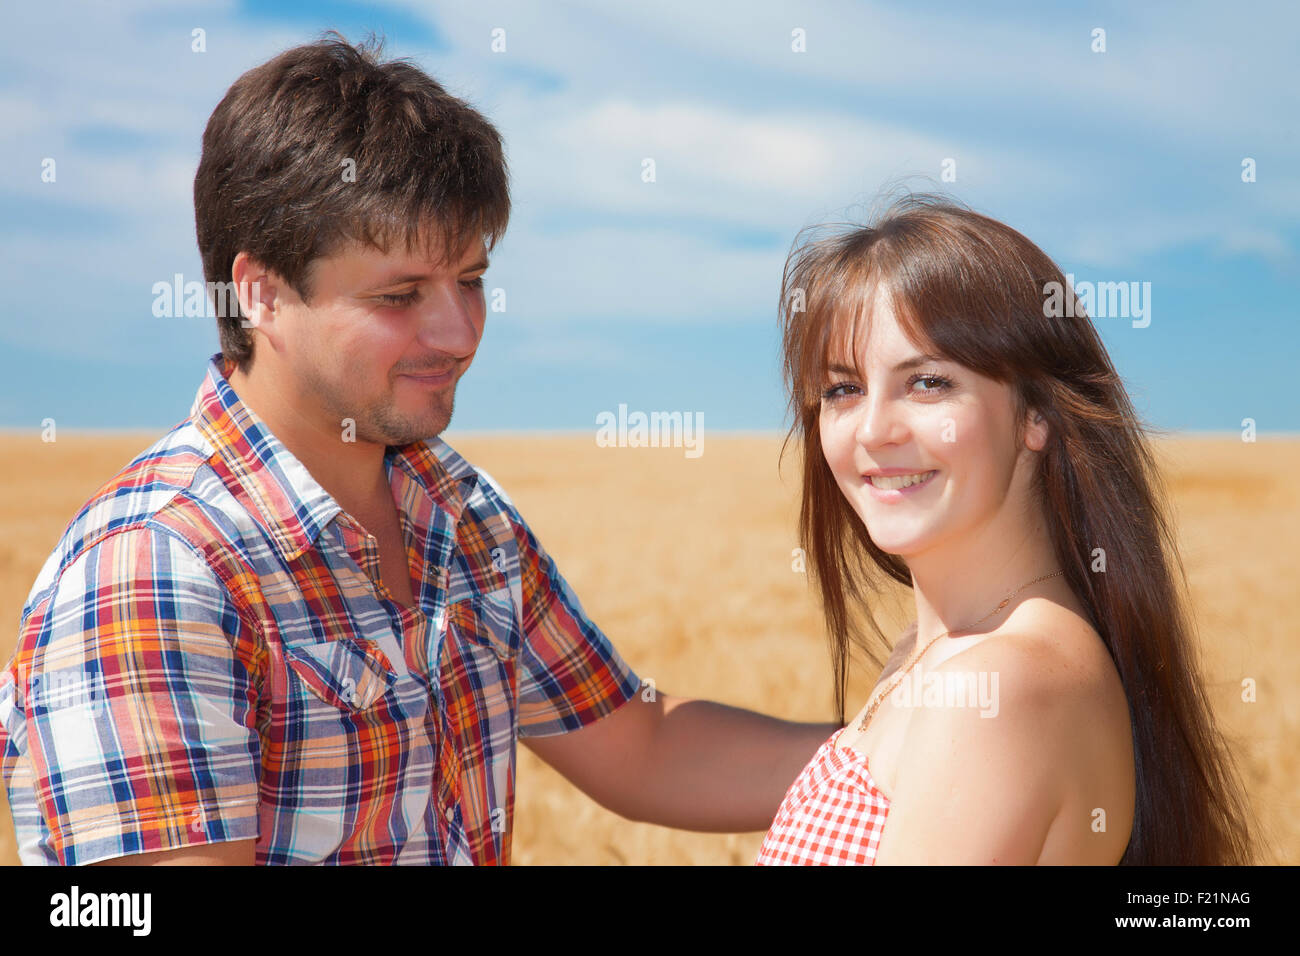 Porträt eines jungen Paares auf dem Hintergrund von einem Weizenfeld an einem sonnigen Tag Stockfoto